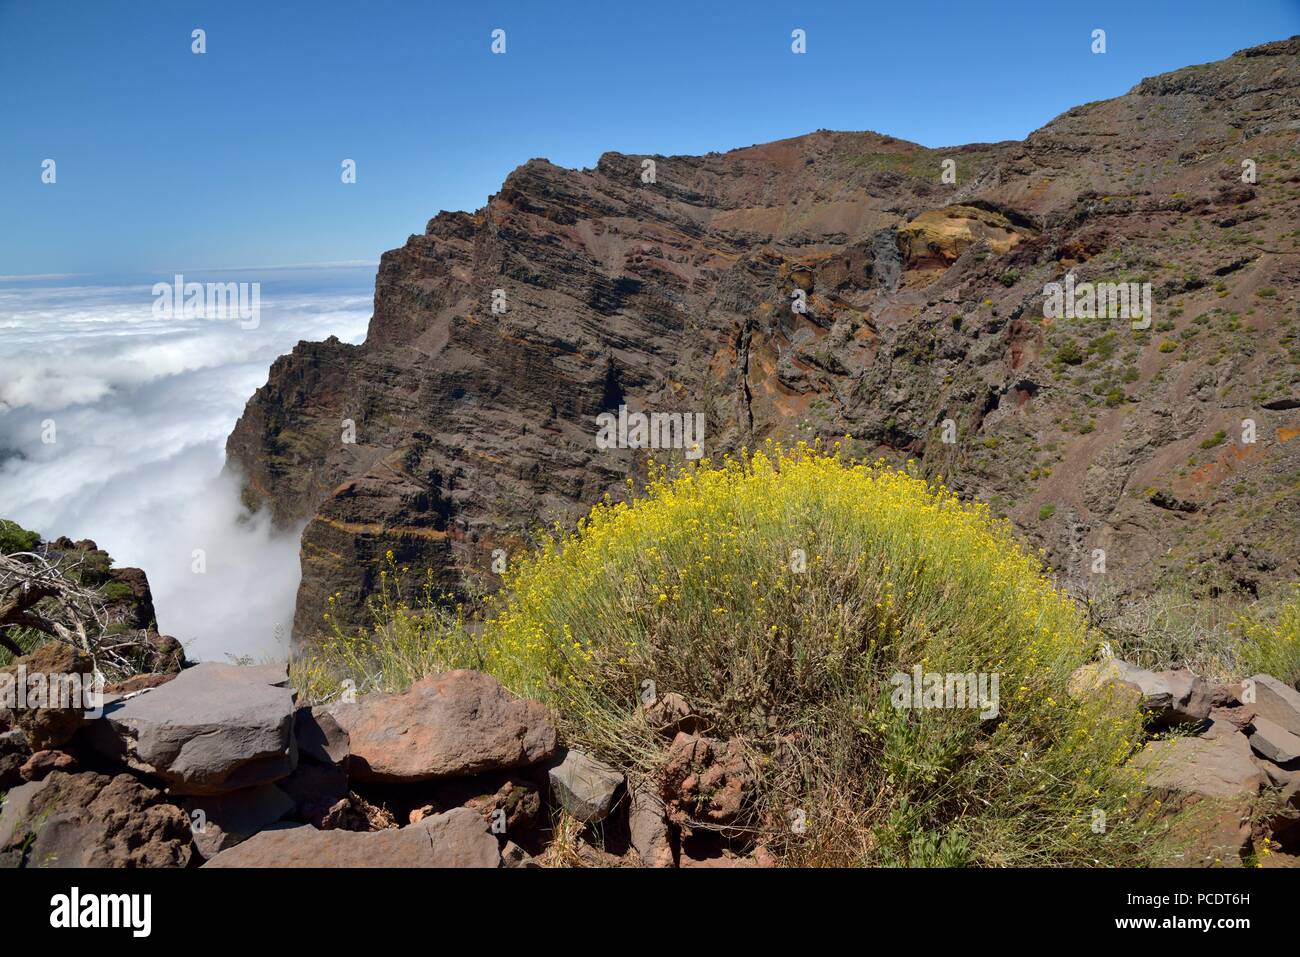 View from the Rim of Caldera de Taburiente, Roque de los Muchachos, La Palma, Canary Islands, Spain Stock Photo